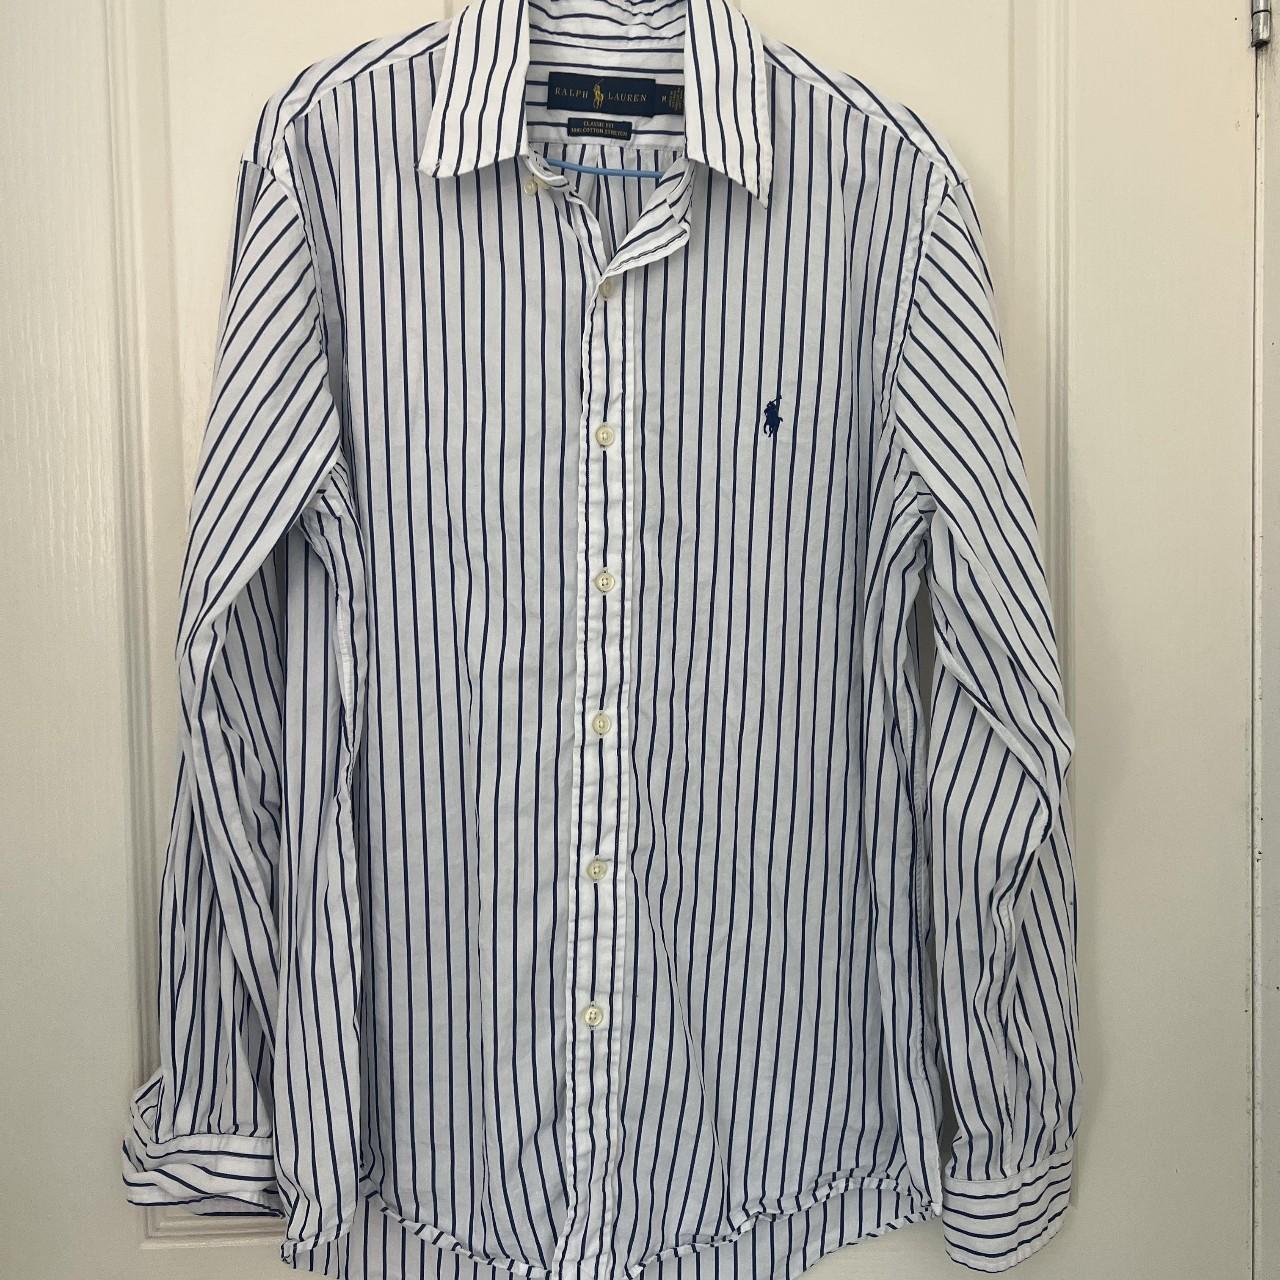 Medium, Polo Ralph Lauren Shirt Classic Fit #shirt... - Depop